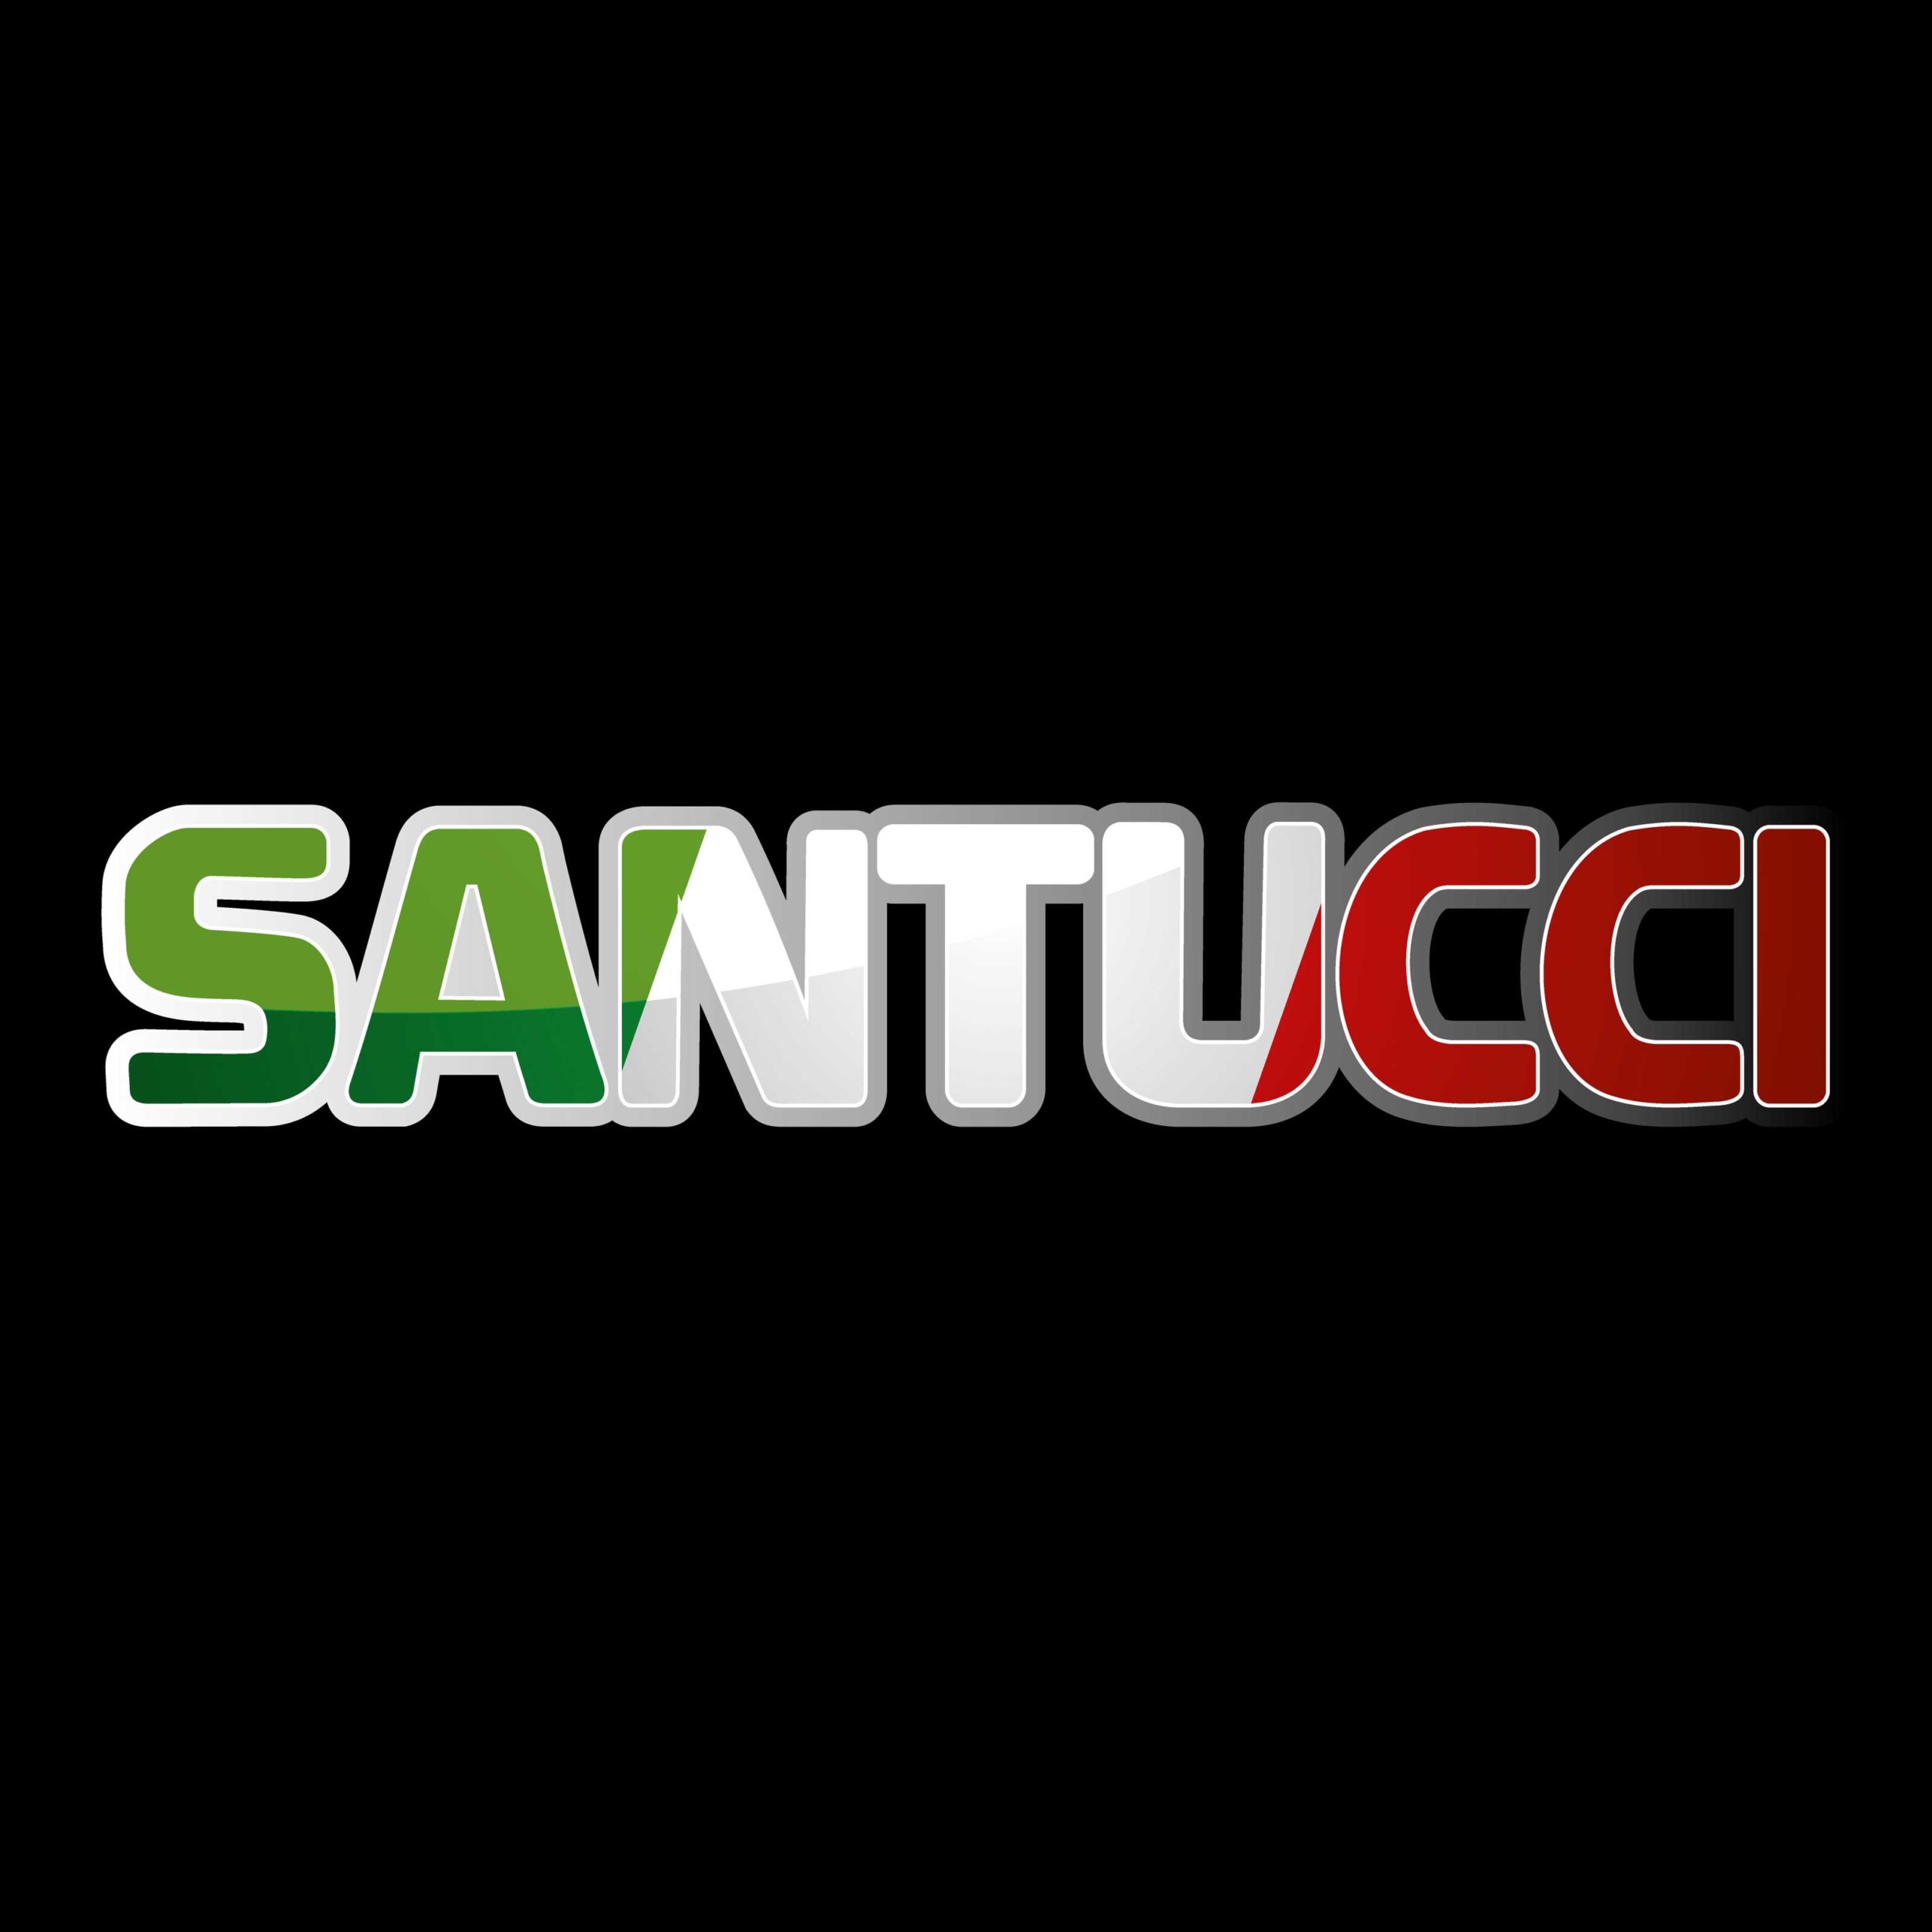 Santucci – Logo